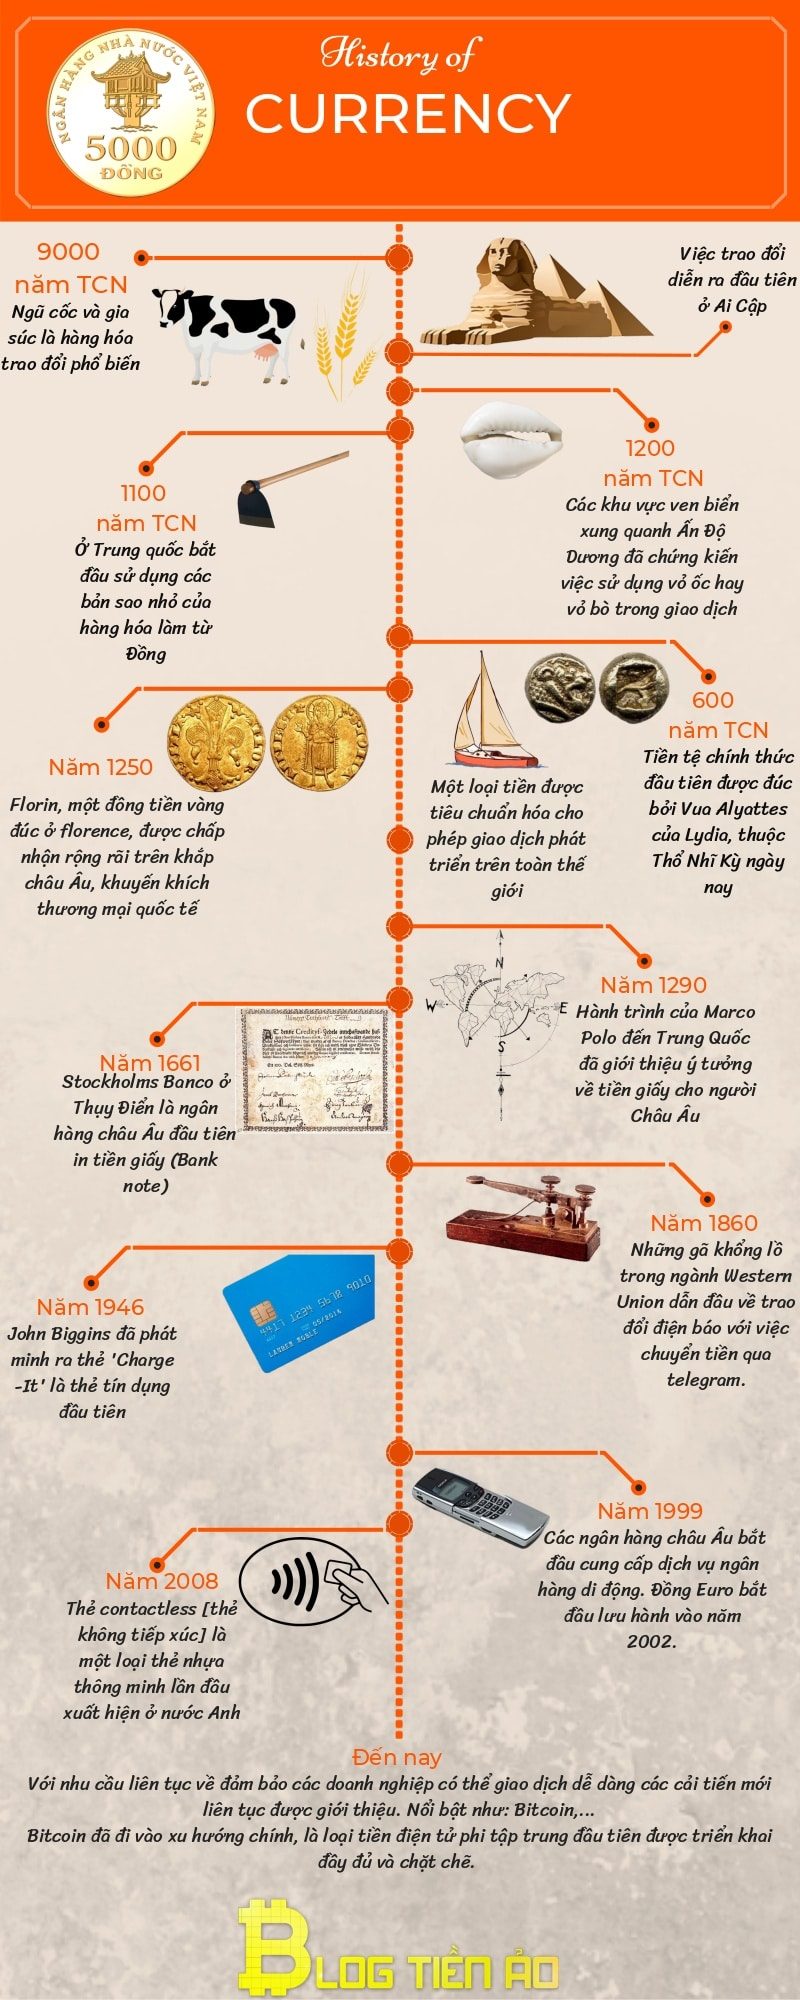 Histoire de la formation et du développement de la monnaie